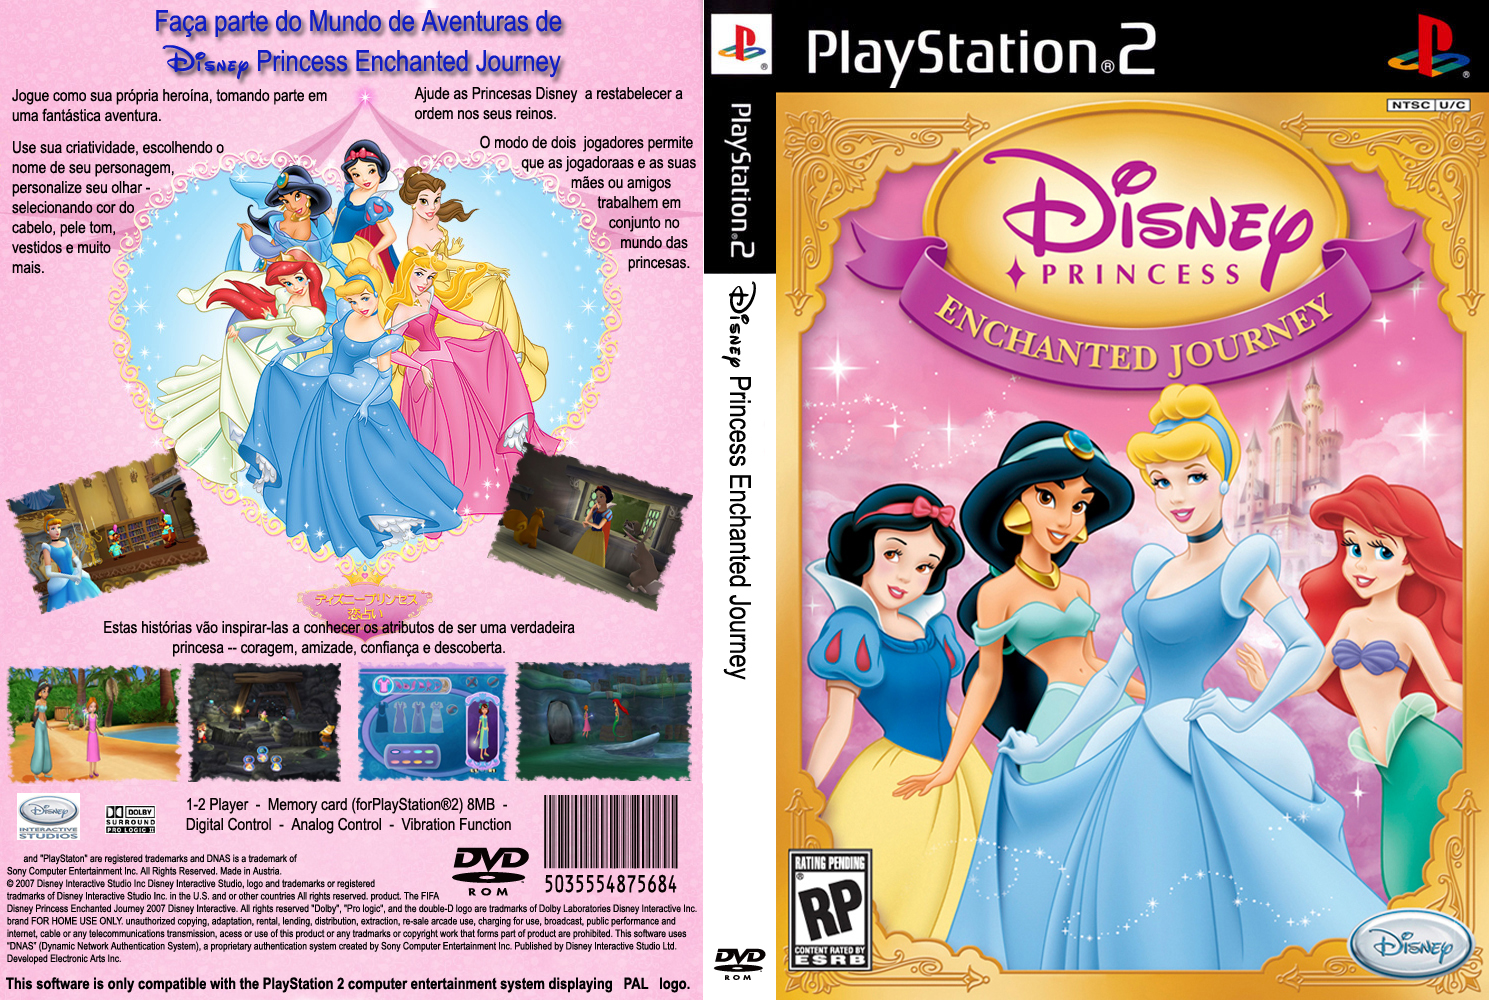 http://4.bp.blogspot.com/_thjFcARbGrQ/TUnmRpW50II/AAAAAAAAAMo/ad-7-T6yV5U/s1600/Disney_Princess_Enchanted_Journ_cap.jpg